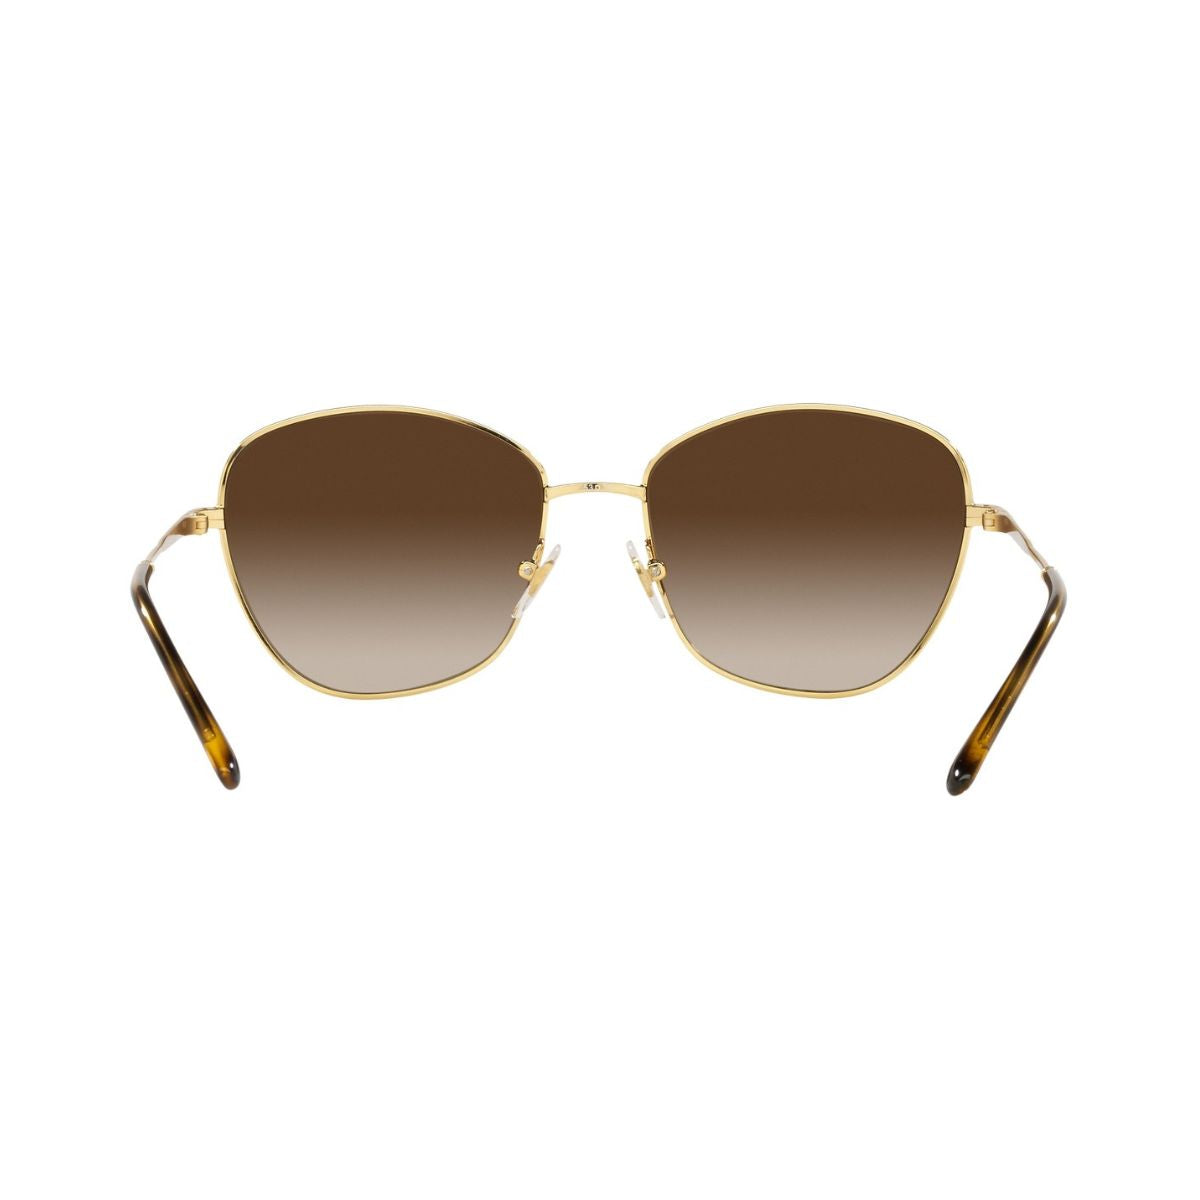 "Shop Vogue Sunglasses For Womens At Optorium"